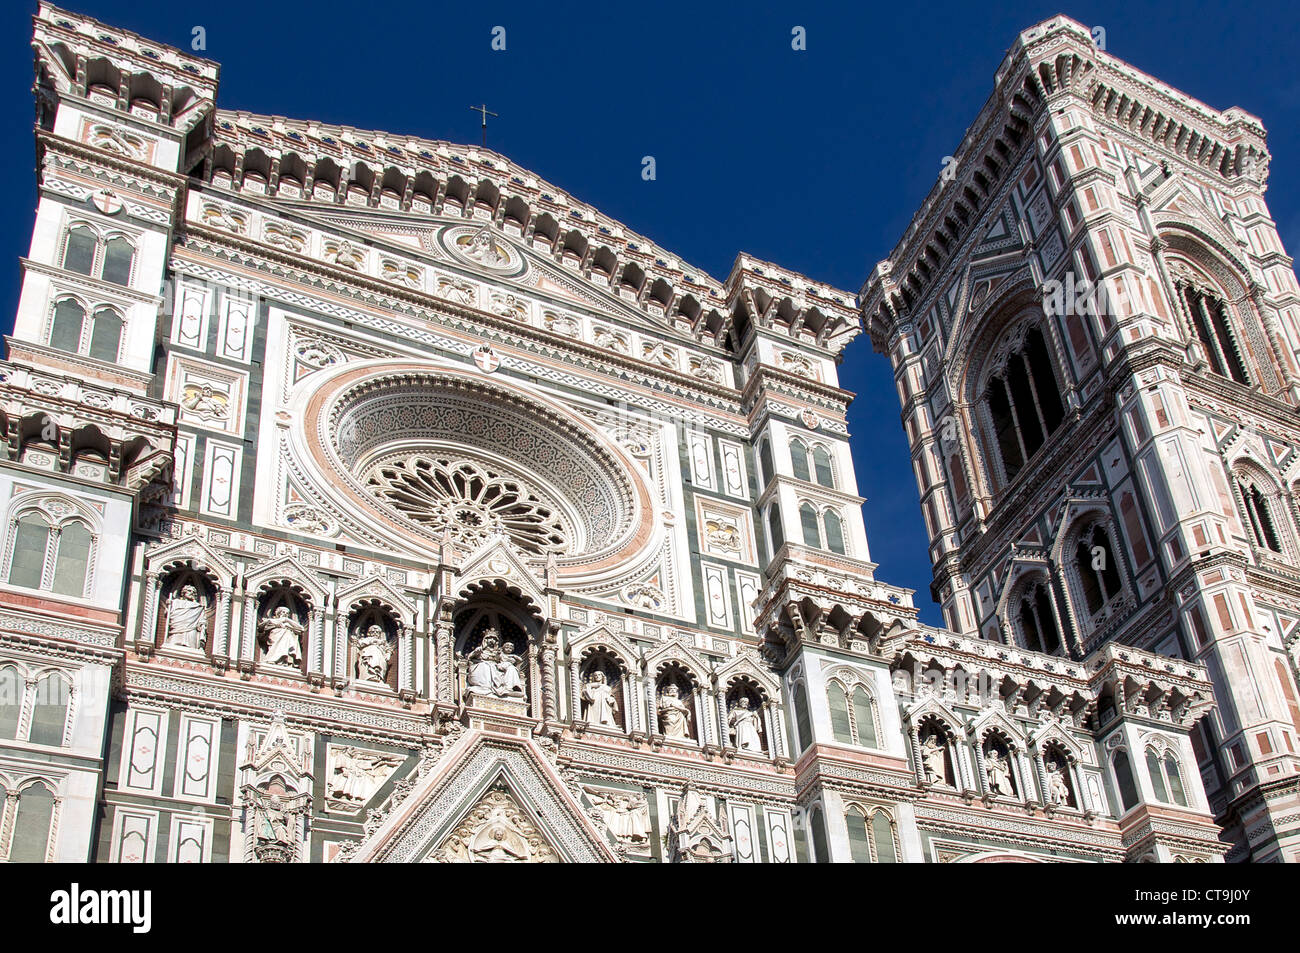 Facade of Duomo and Campanile Florence Italy Stock Photo